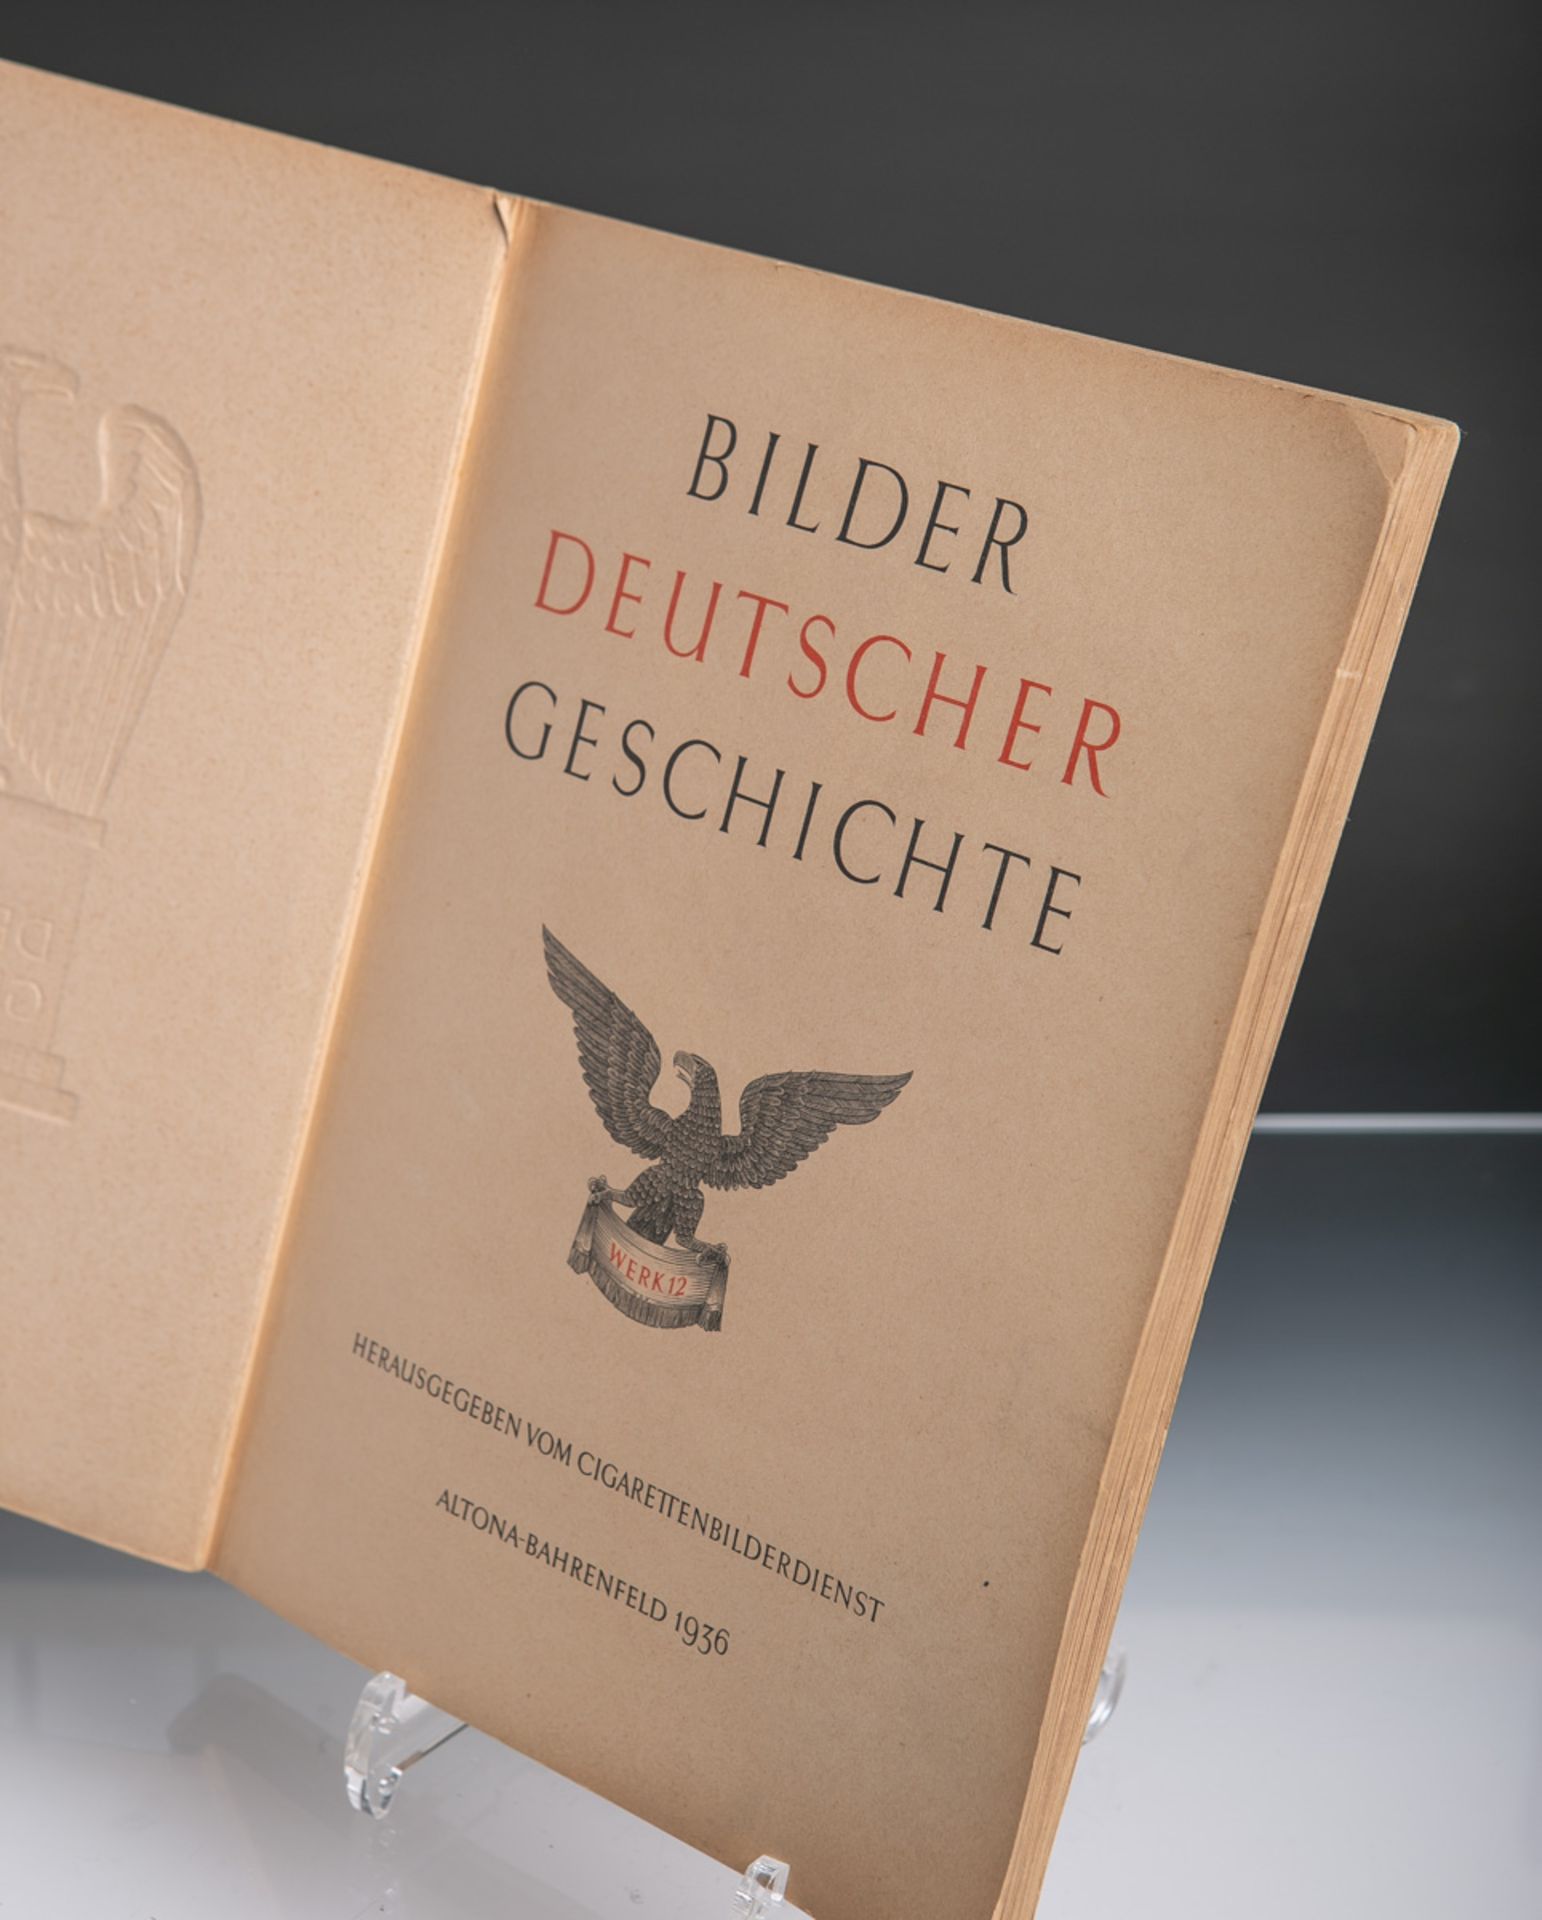 Zigarettenbilderalbum "Bilder Deutscher Geschichte" (1936) - Bild 2 aus 2